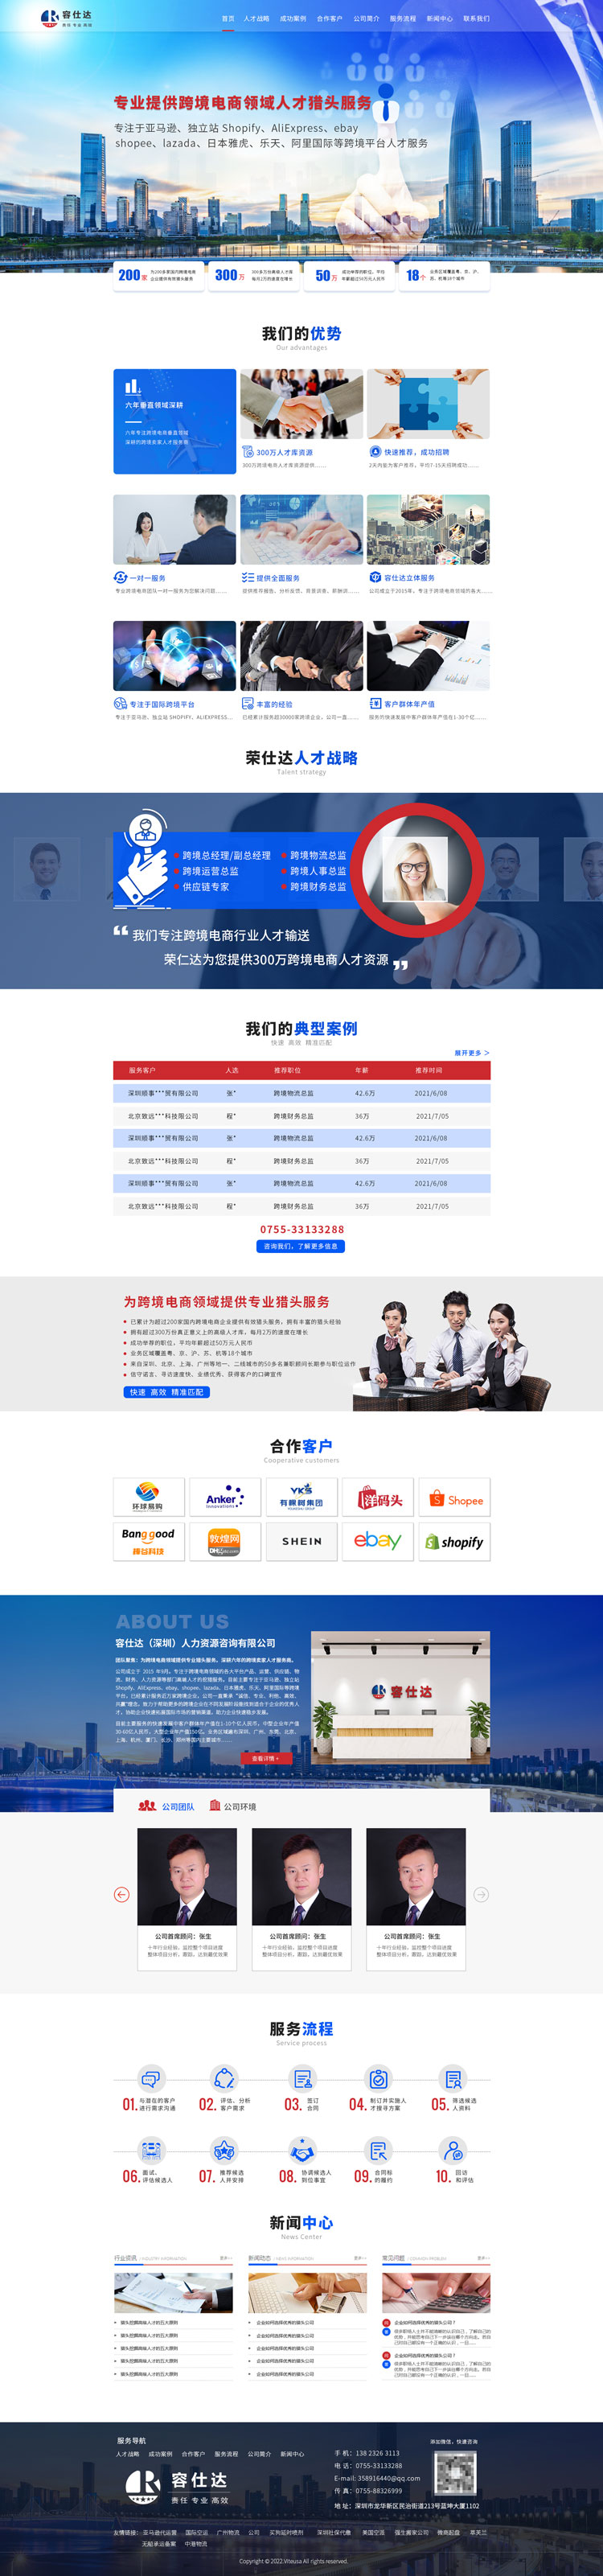 深圳网站建设案例之深圳跨境电商猎头公司容仕达